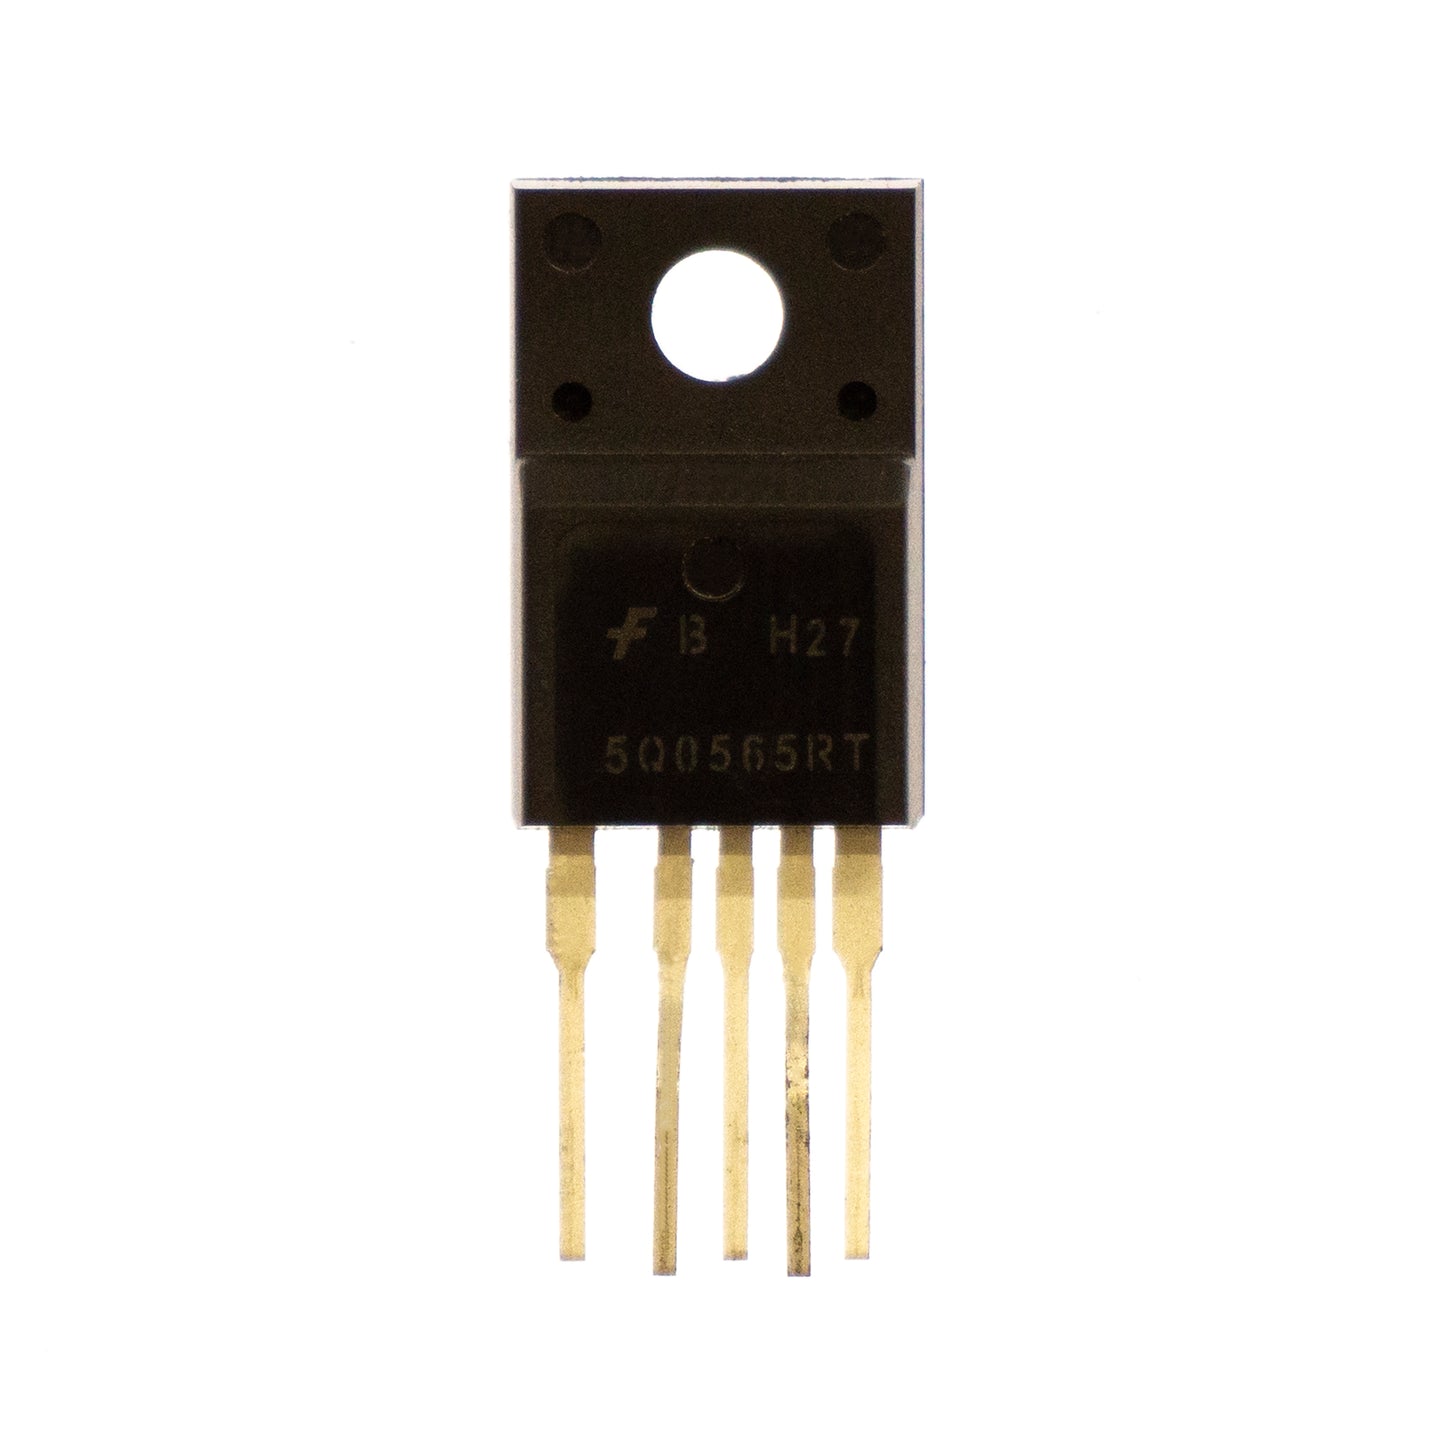 FBH27 500565R componente elettronico, circuito integrato, transistor, 5 contatti